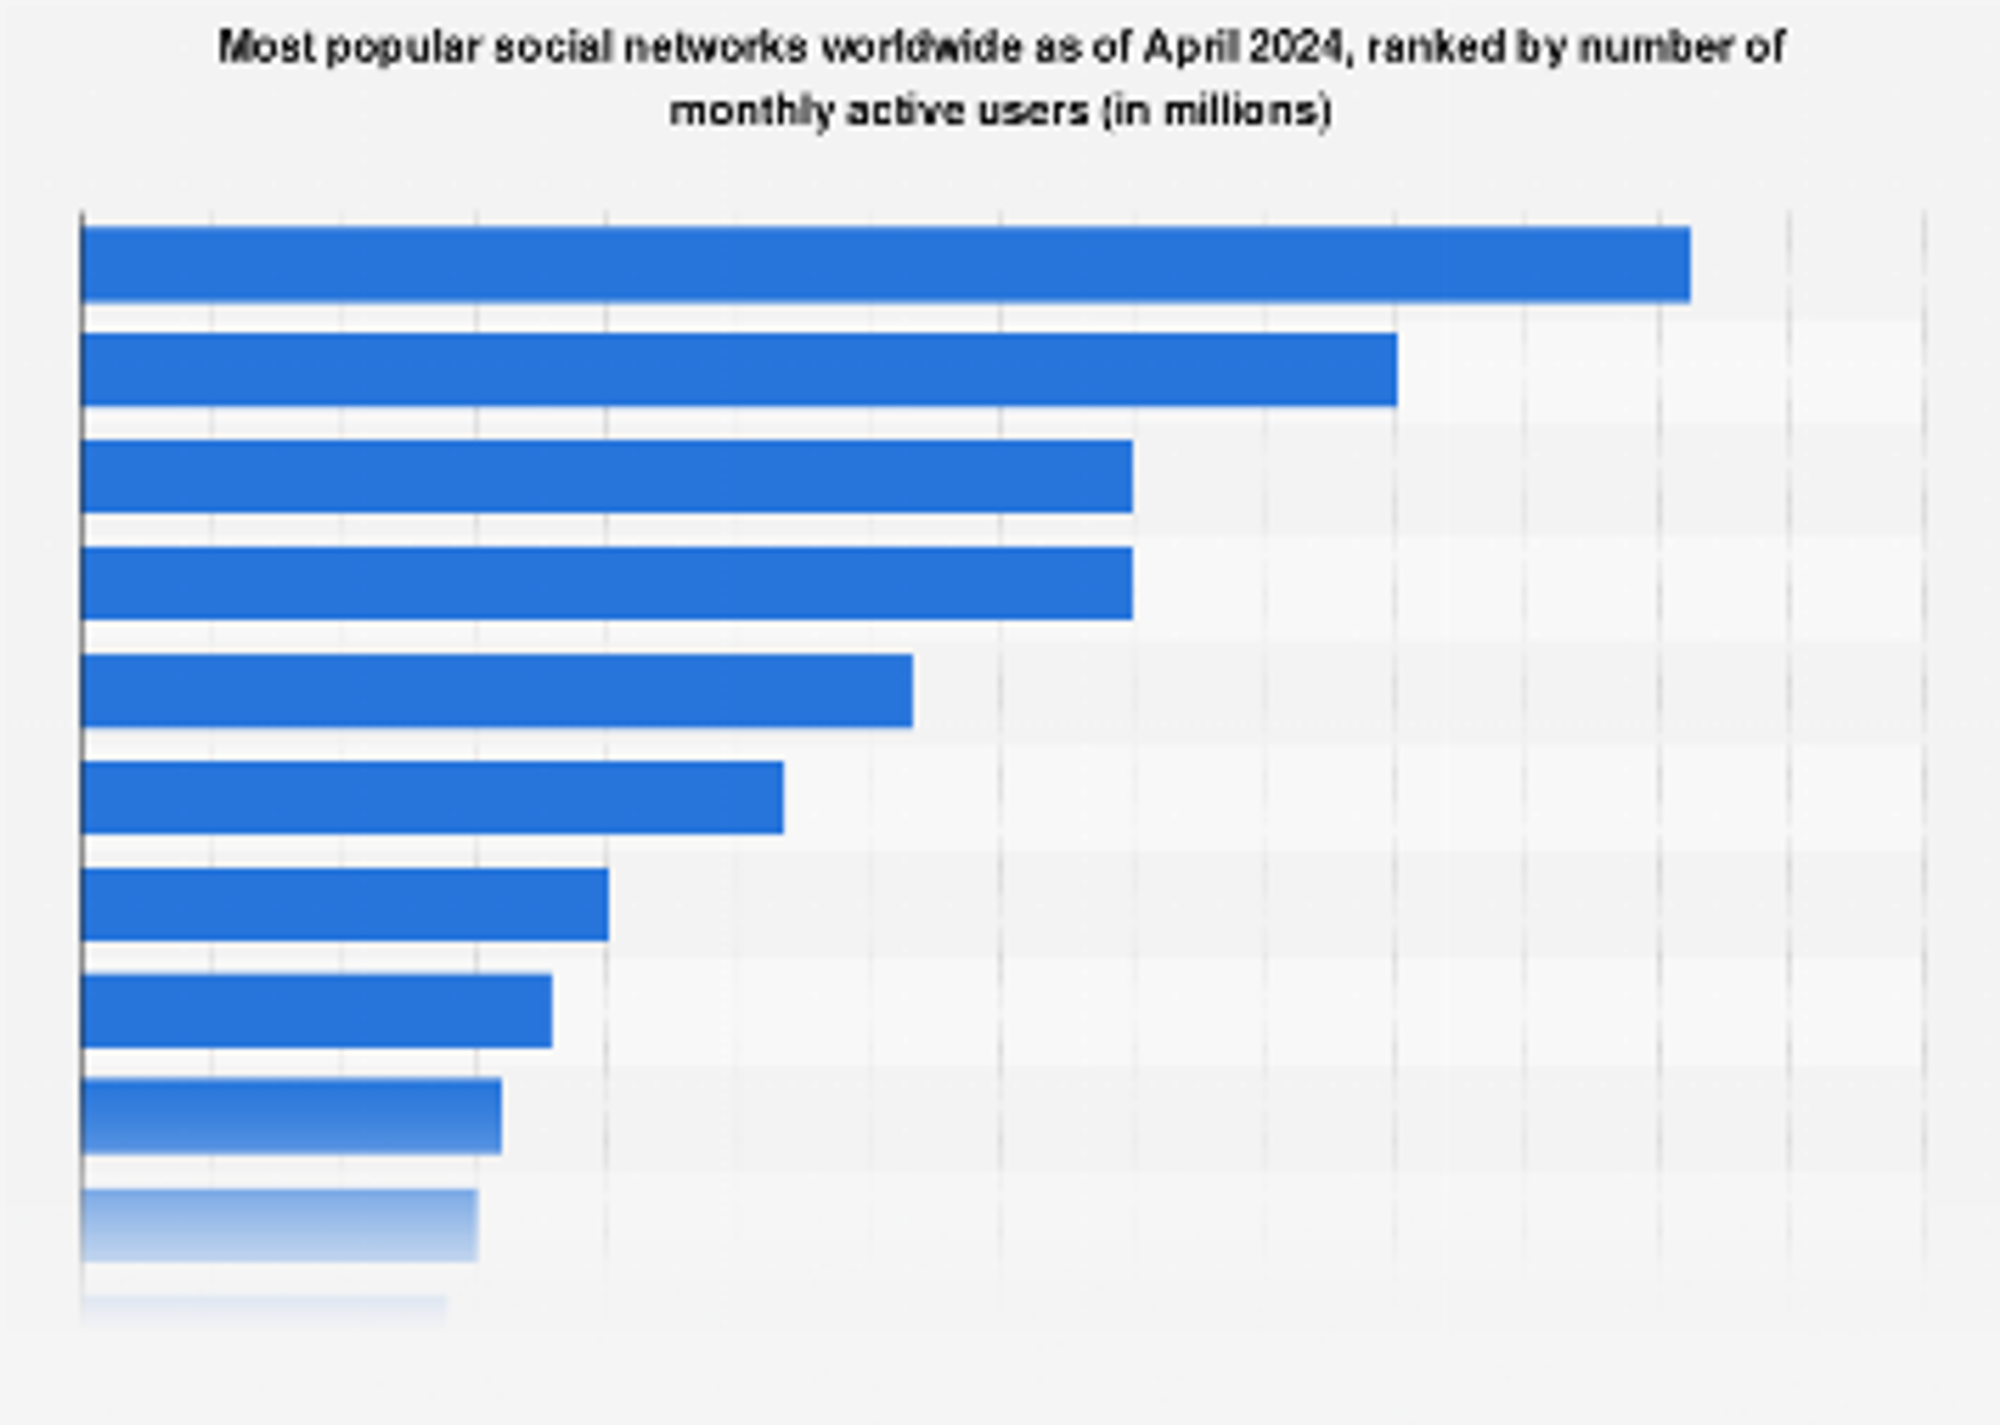 Most used social media 2021 | Statista